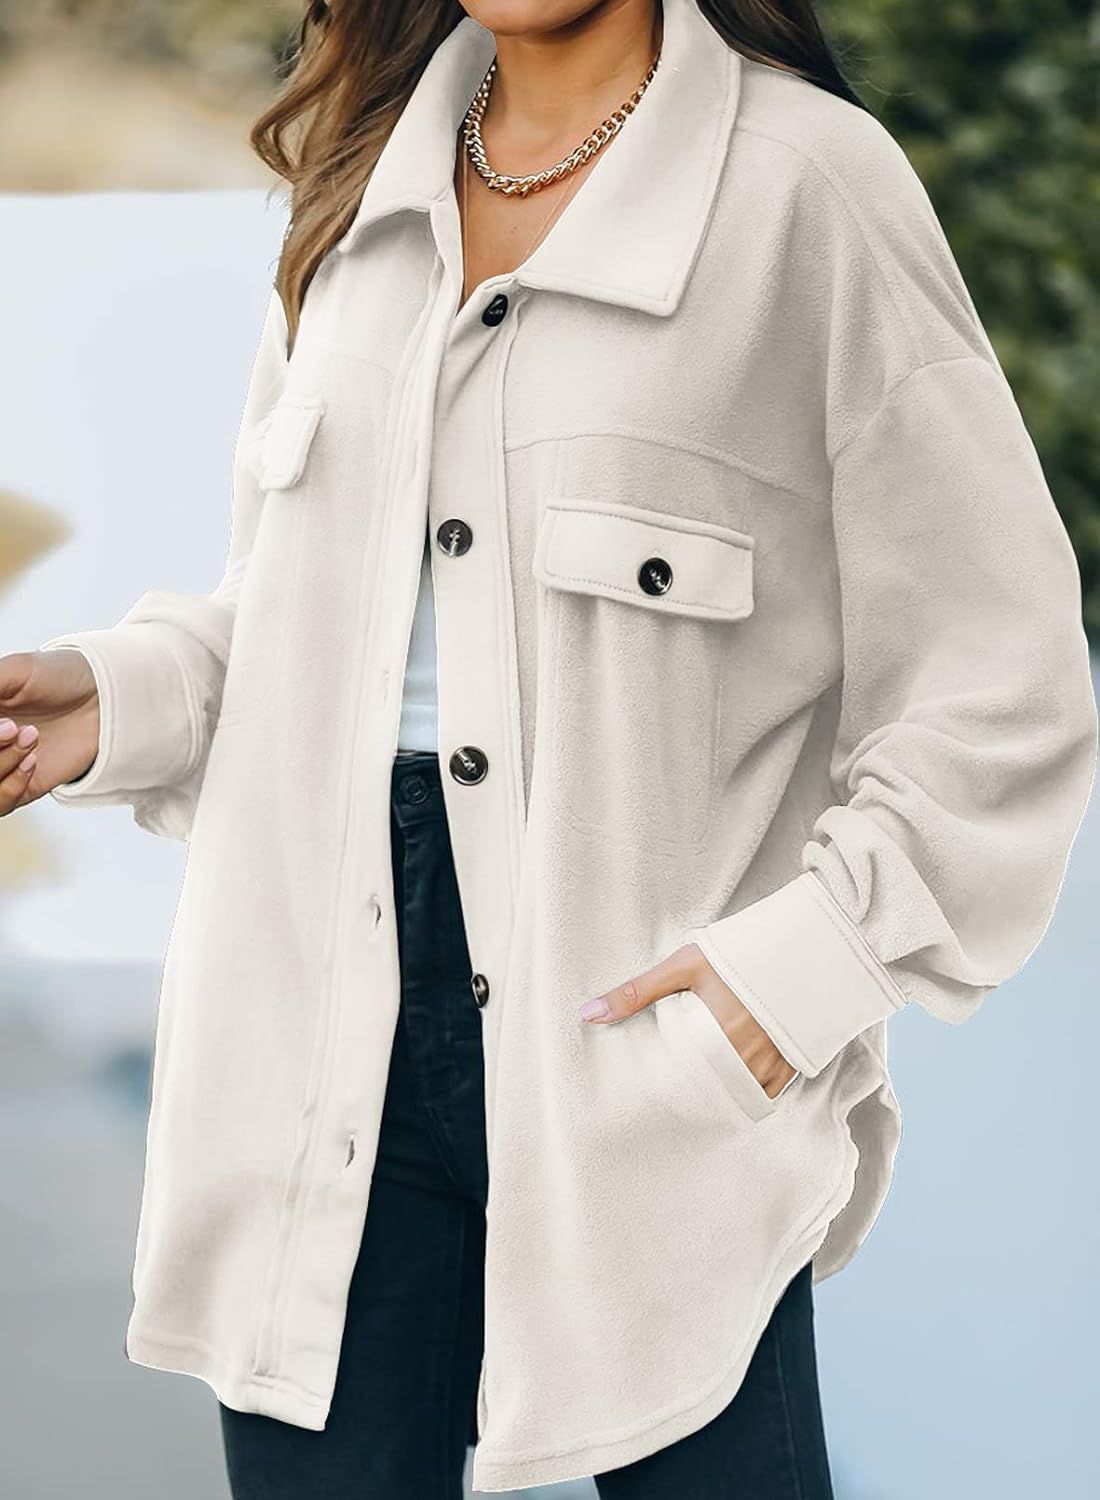 Astylish Women Casual Coat Long Sleeve Shacket Shirts Jacket with Pockets | Amazon (US)